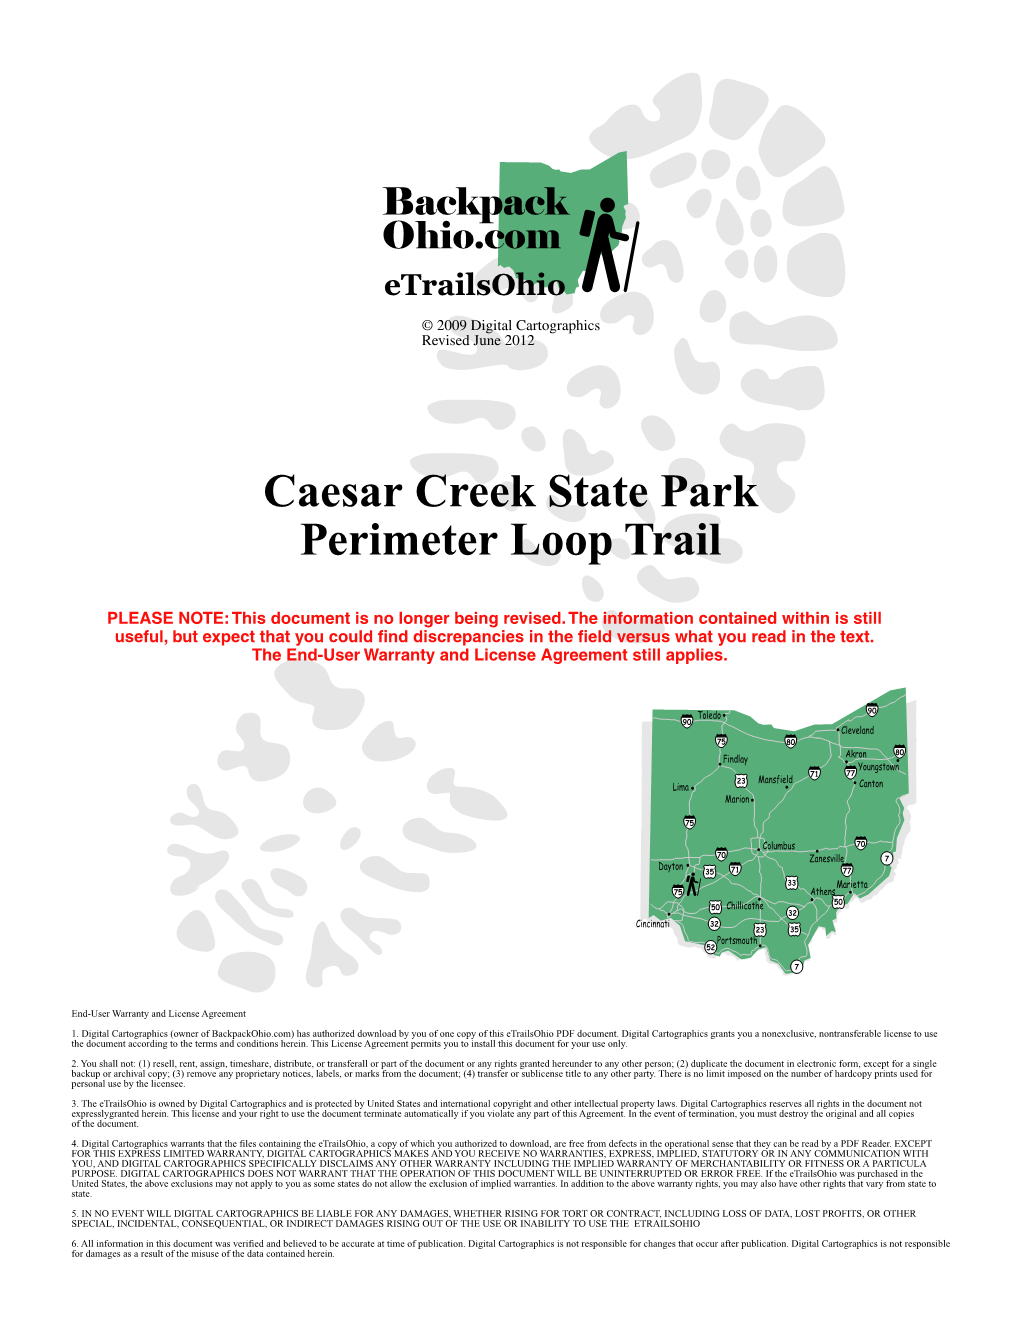 Caesar Creek State Park Perimeter Loop Trail